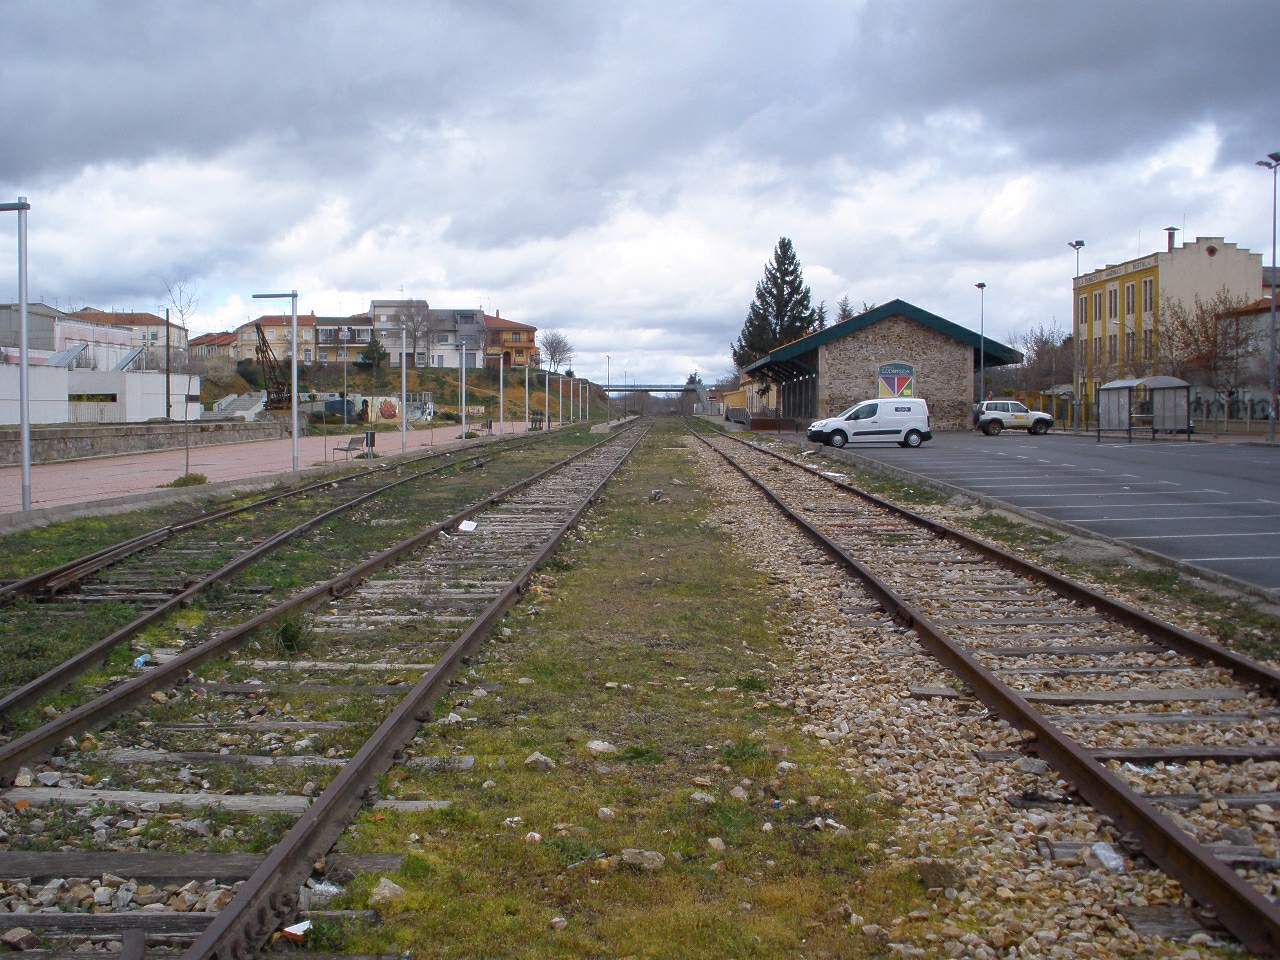 The out-of-use tracks of the Ruta de la Plata near La Bañeza in the region León